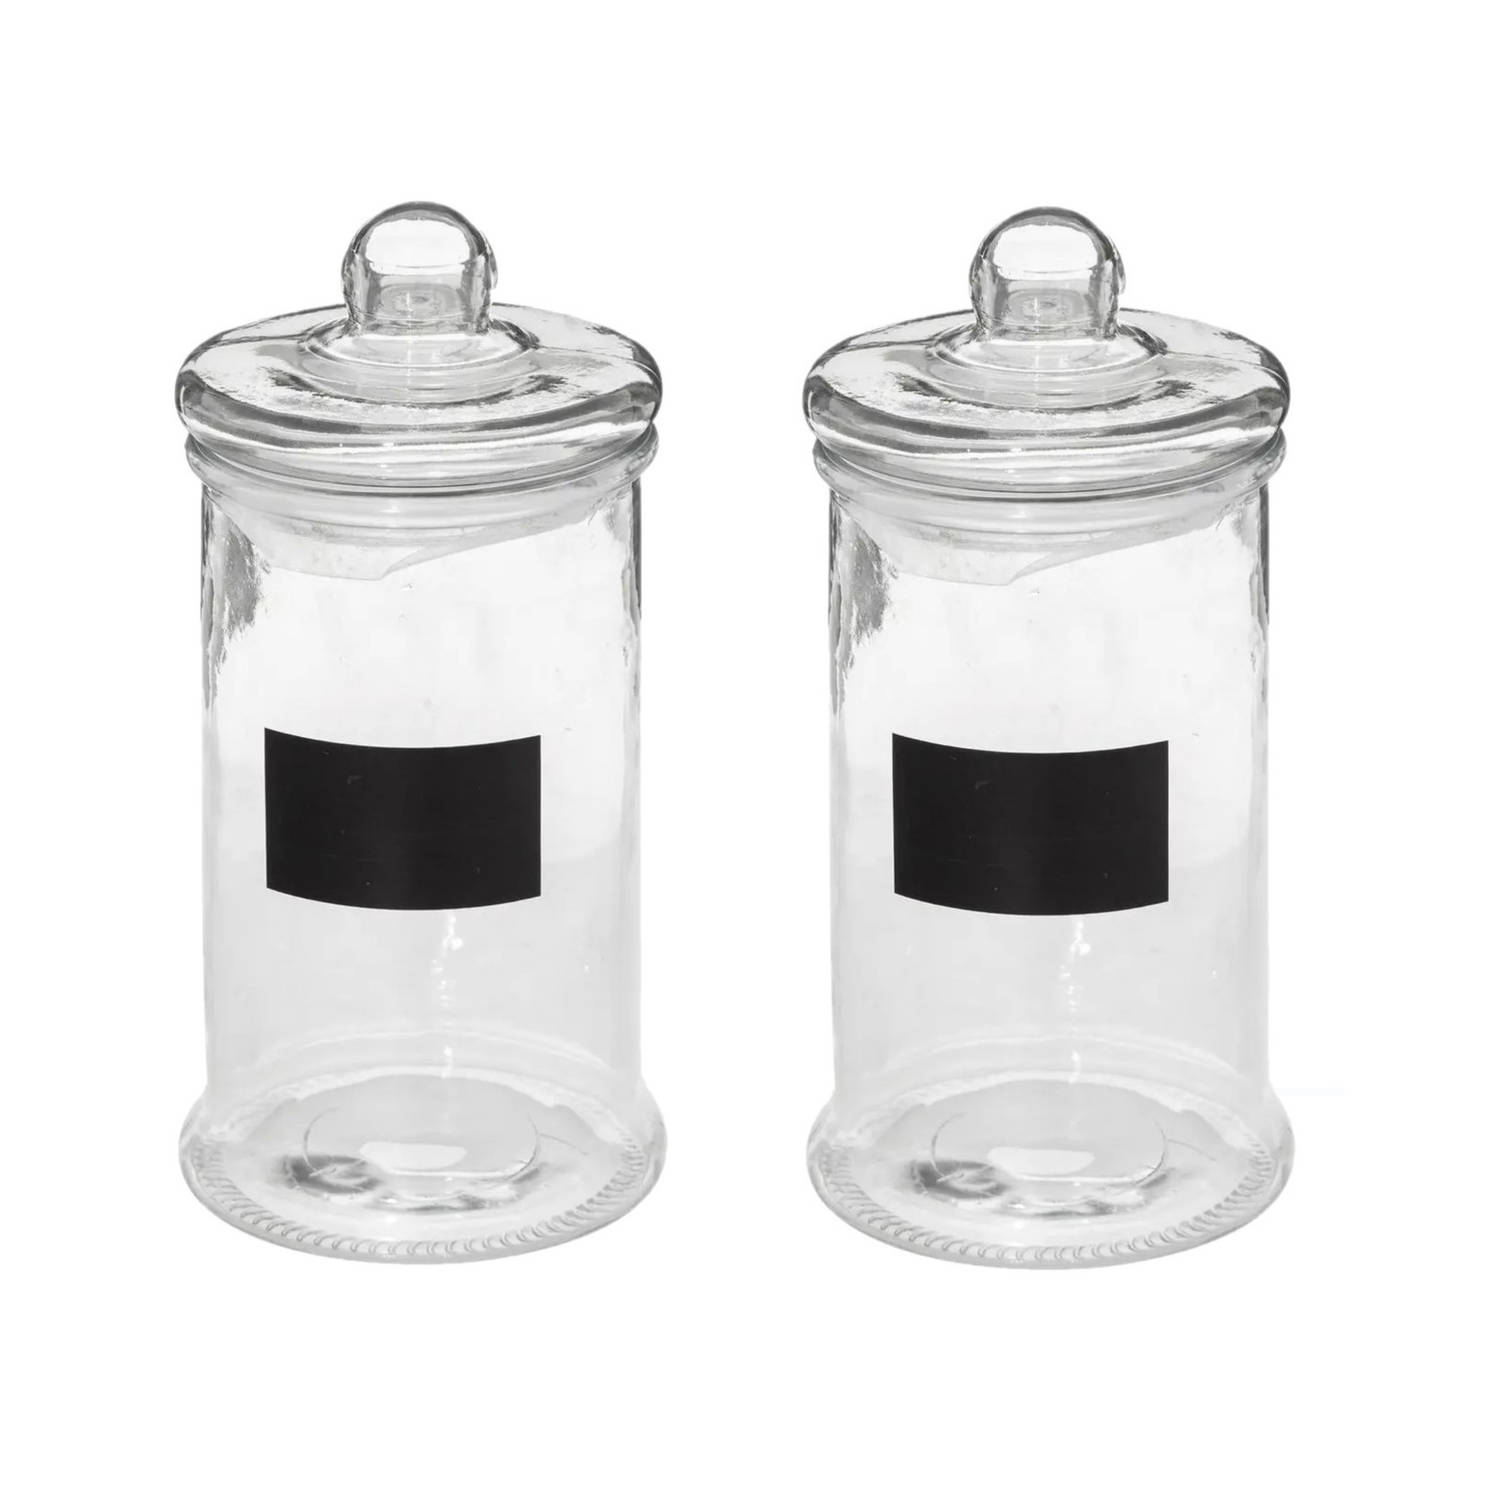 2x stuks snoeppotten/voorraadpotten 1,6L glas met deksel en krijtvlak - Voorraadpot